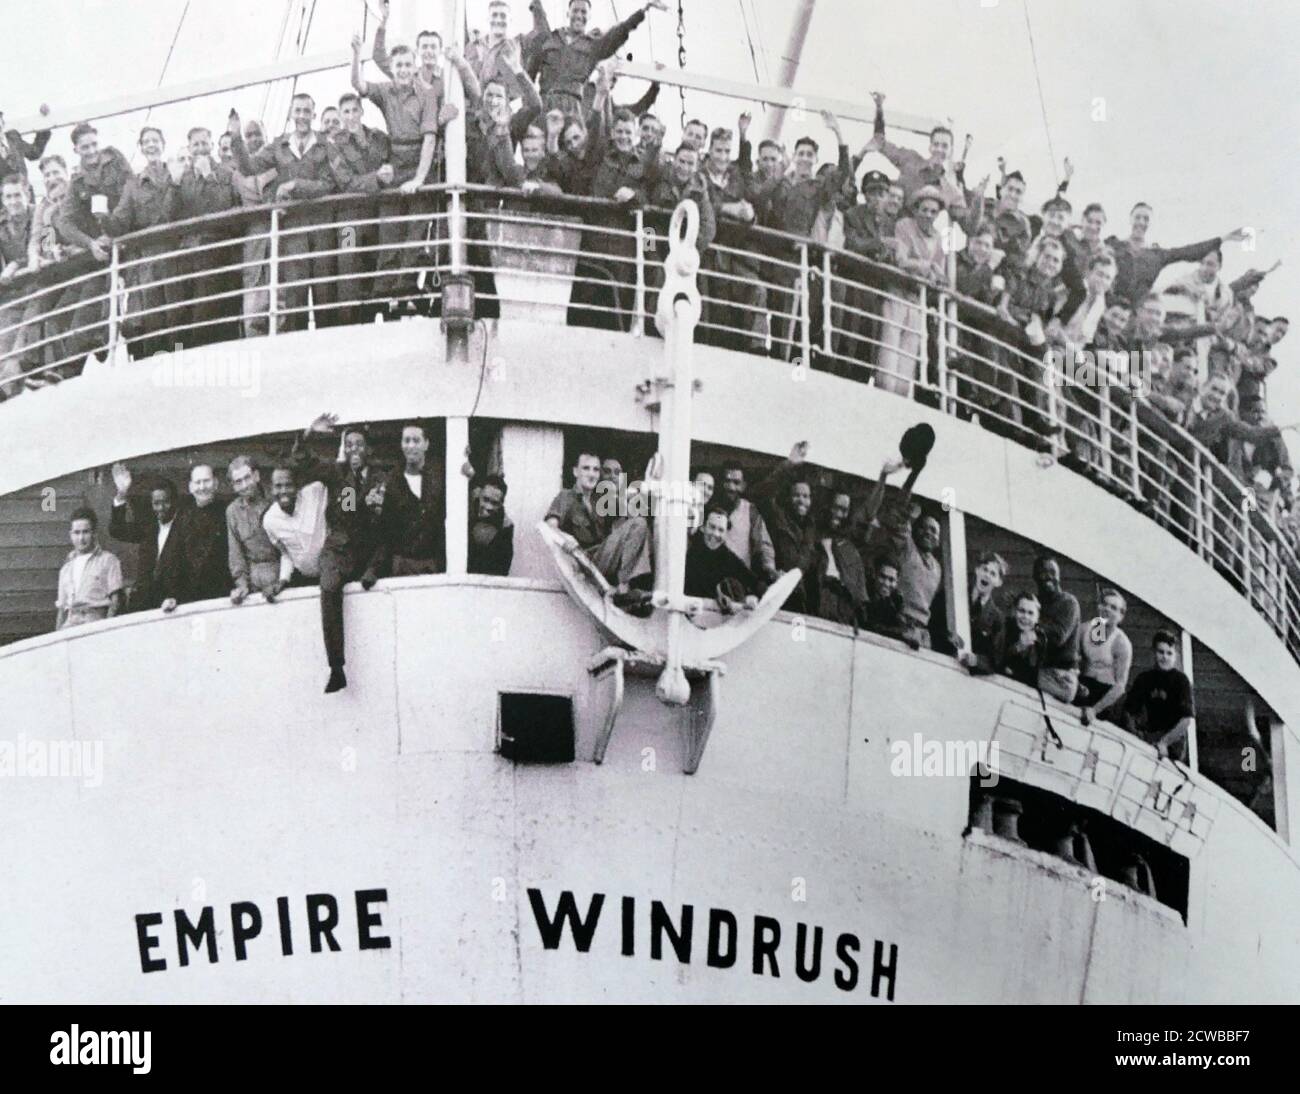 L'Empire Windrush a amené au Royaume-Uni l'un des premiers grands groupes d'immigrants indiens d'après-guerre, transportant 1,027 passagers et deux passagers clandestins lors d'un voyage de la Jamaïque à Londres en 1948. 802 de ces passagers ont donné leur dernier pays de résidence comme quelque part dans les Caraïbes, dont 693 avaient l'intention de s'installer au Royaume-Uni. Banque D'Images